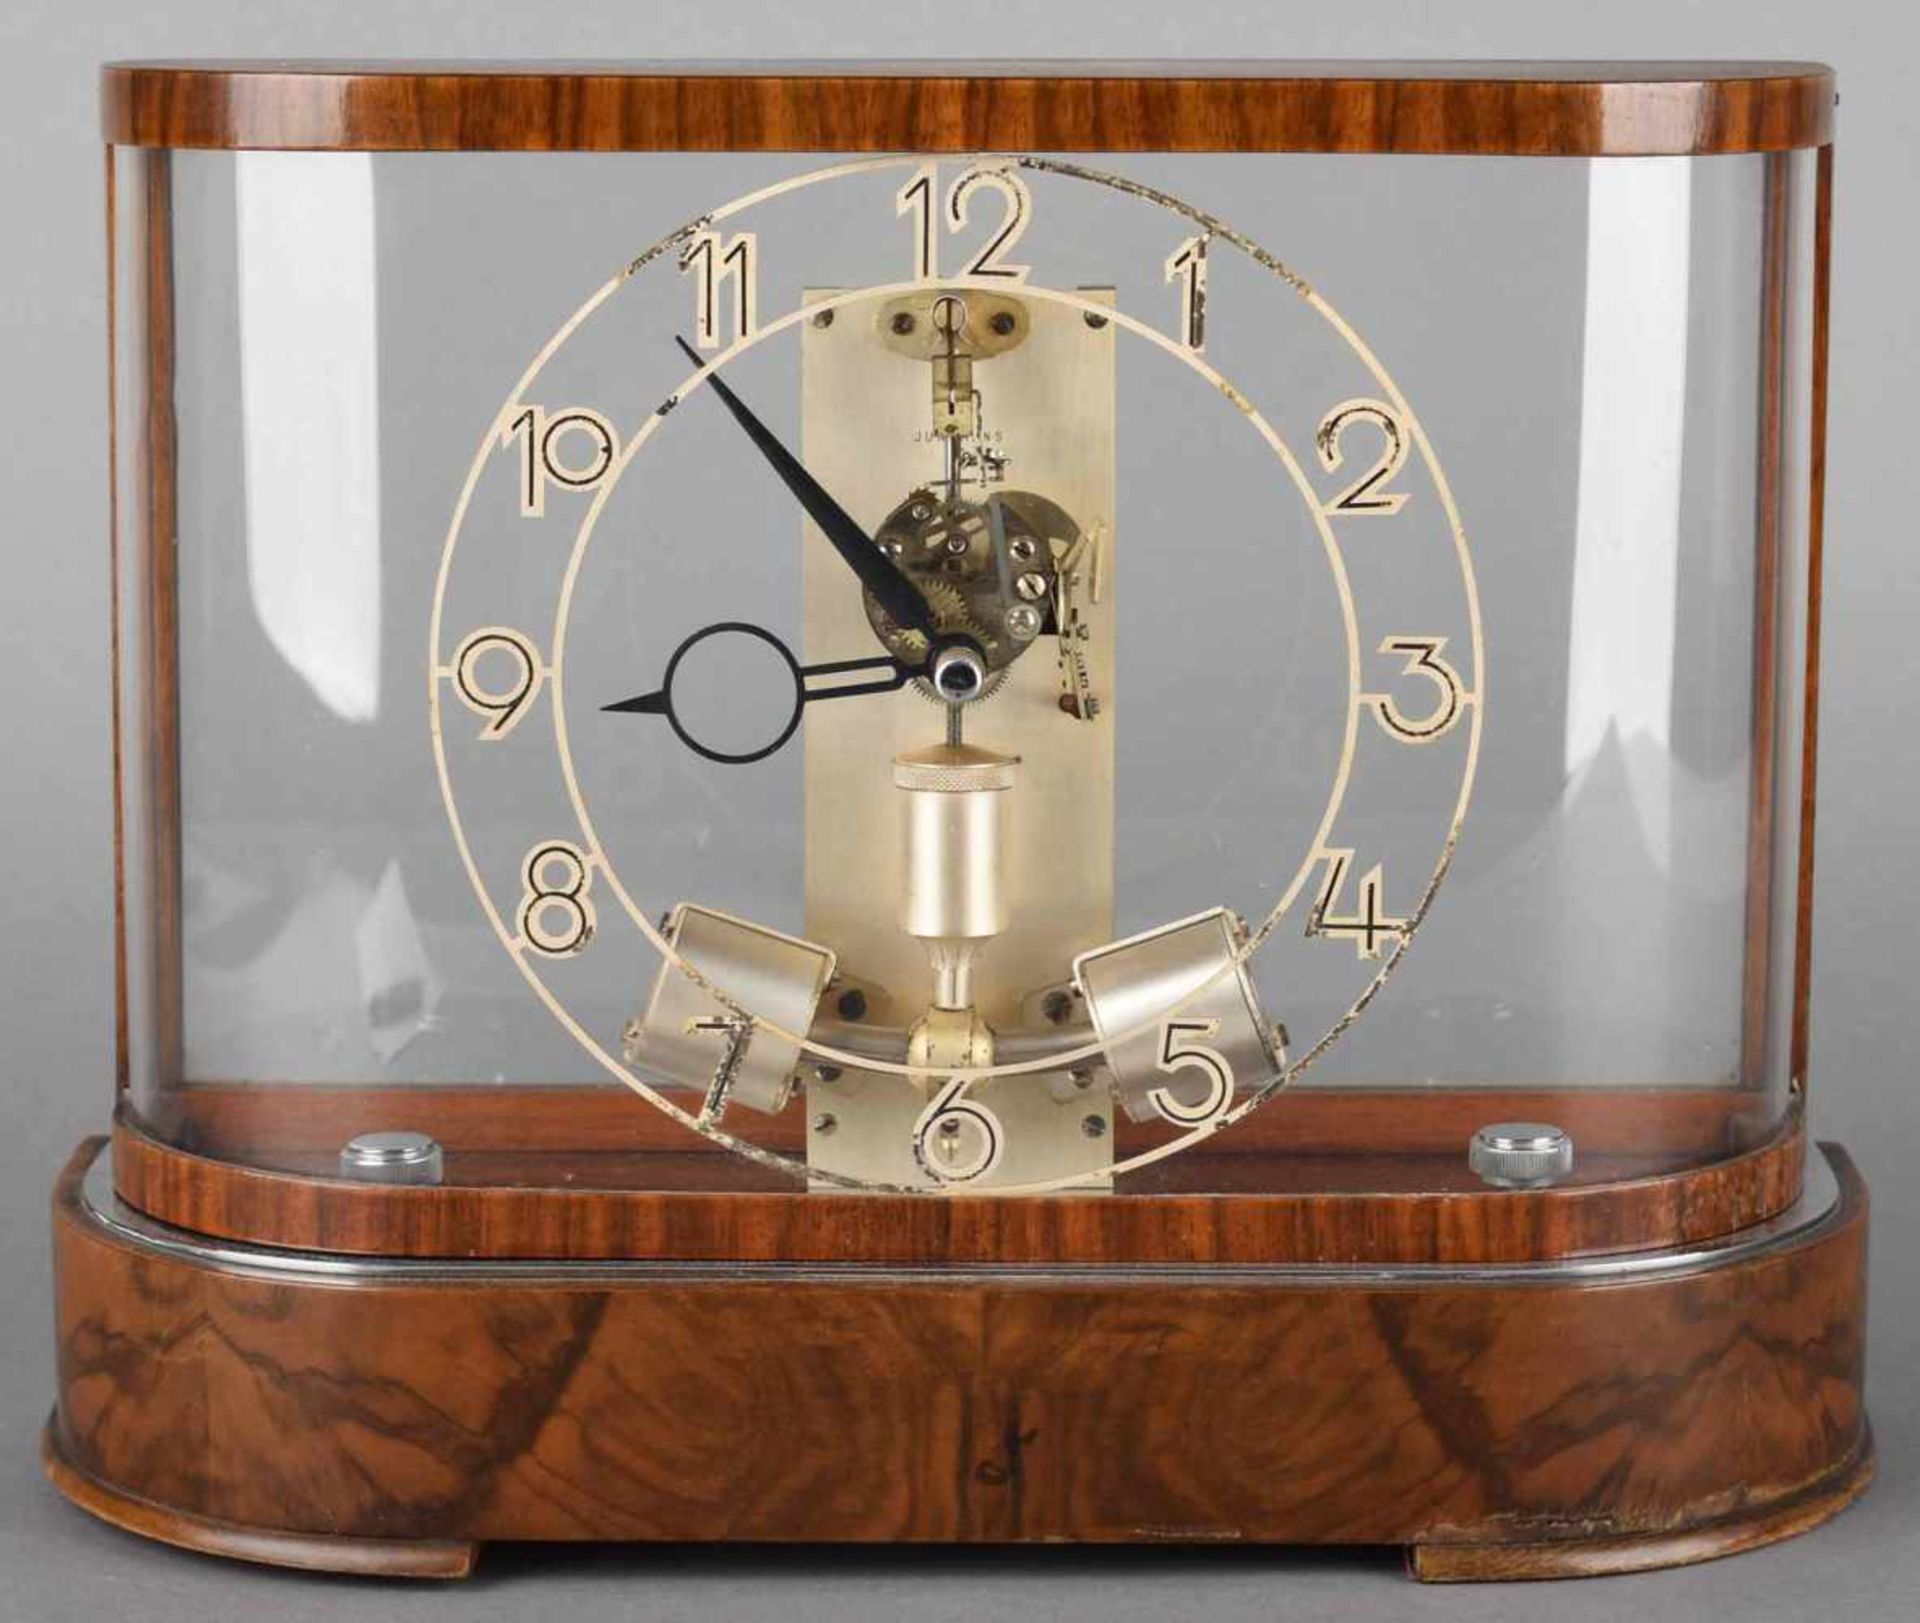 Präzisions-Uhr Hersteller: Junghans, Modell ATO, auf Holzsockel mit verspiegeltem Boden, rundum - Bild 2 aus 2